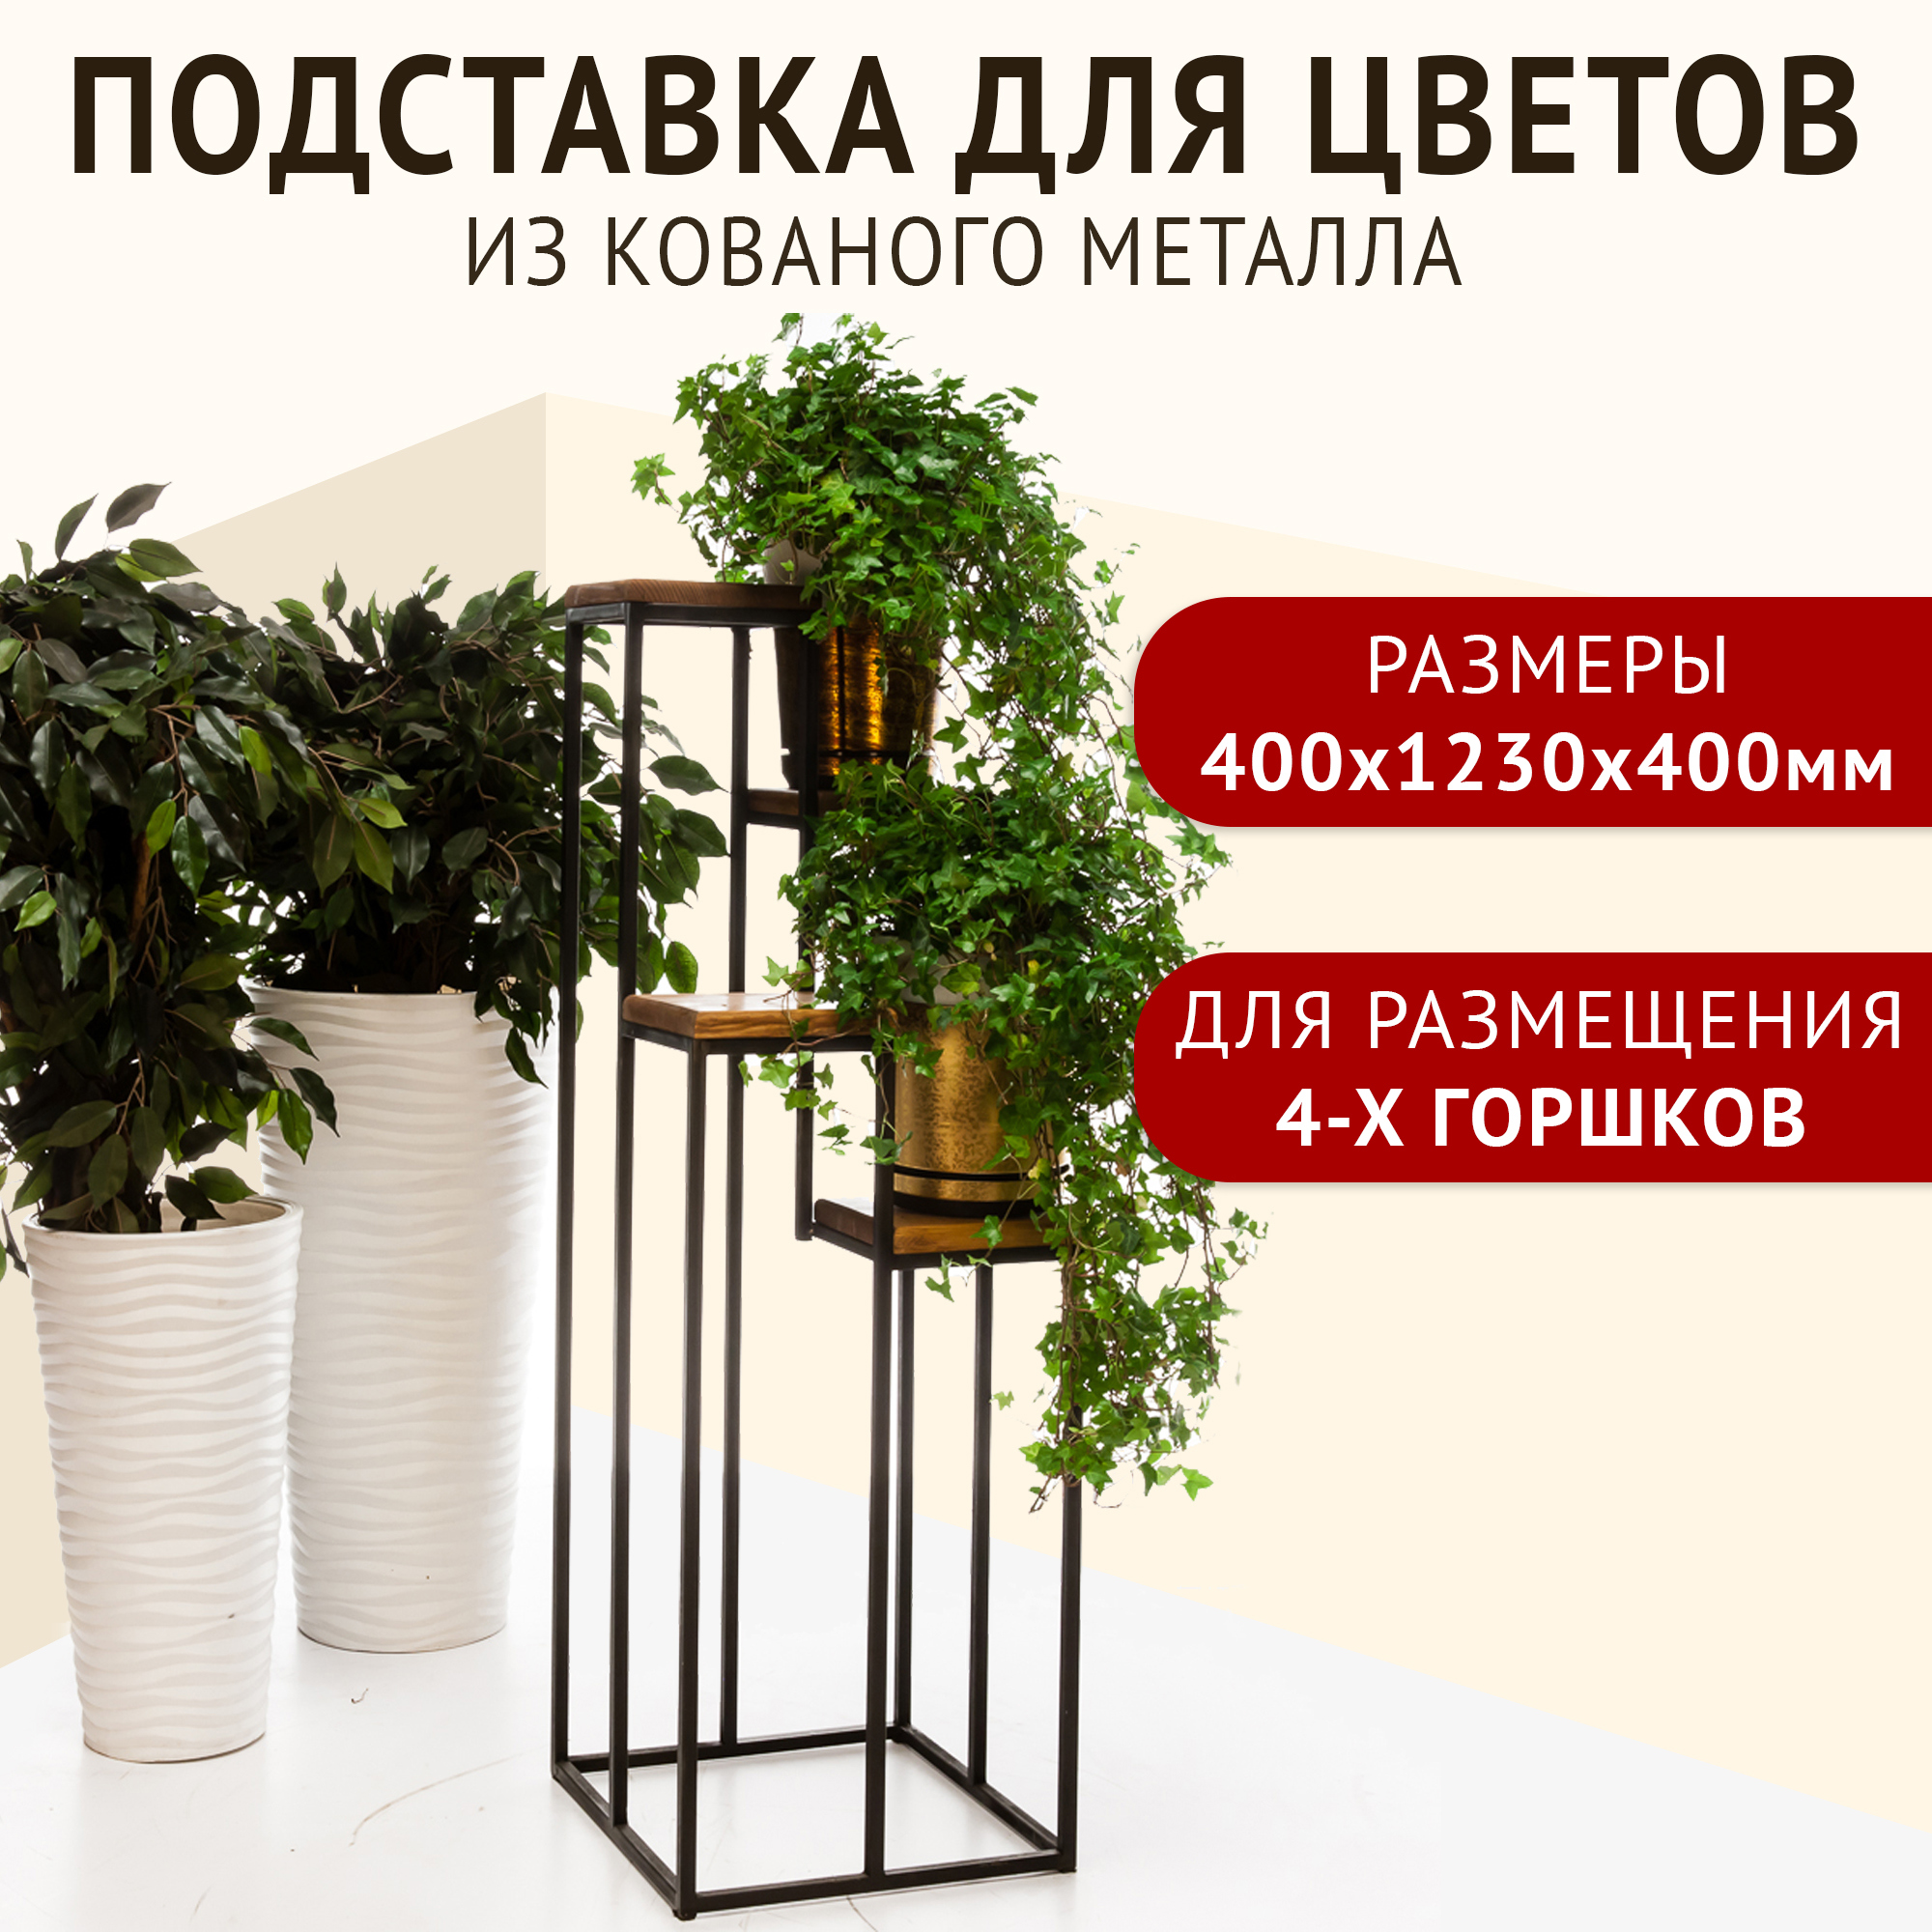 Подставки для цветов - купить недорого в Москве - интернет-магазин жк-вершина-сайт.рф